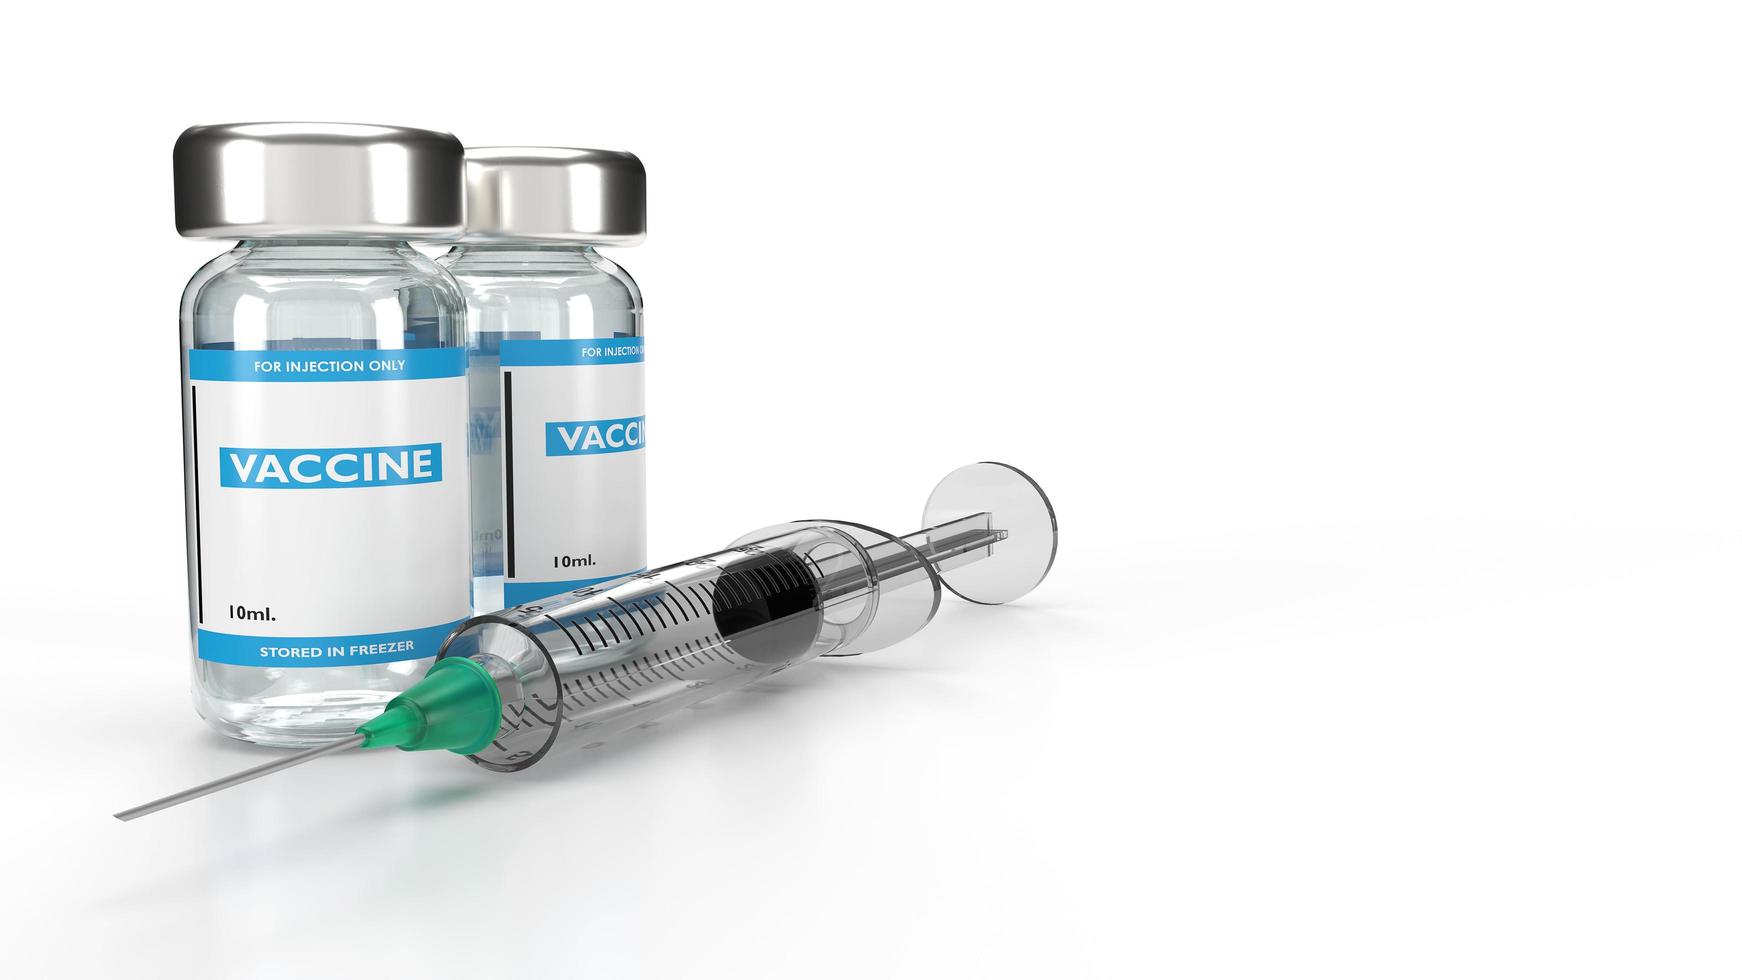 Botella de vacuna y jeringa sobre fondo blanco, ilustración de representación 3D foto